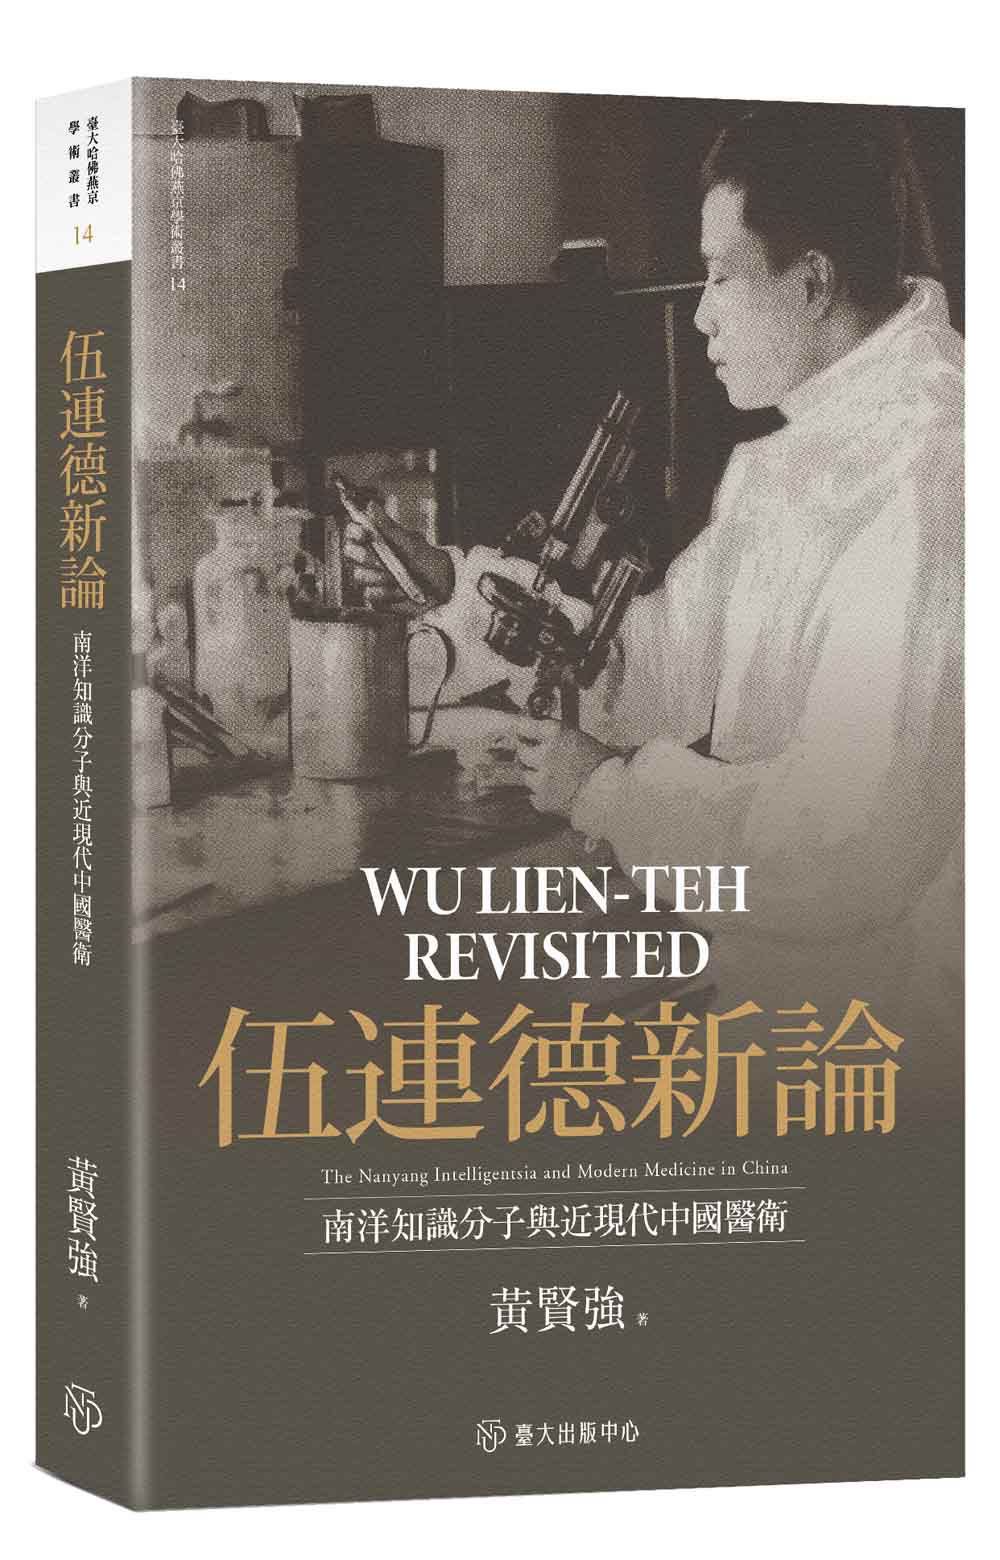 伍連德新論──南洋知識分子與近現代中國醫衛（限量精裝版）